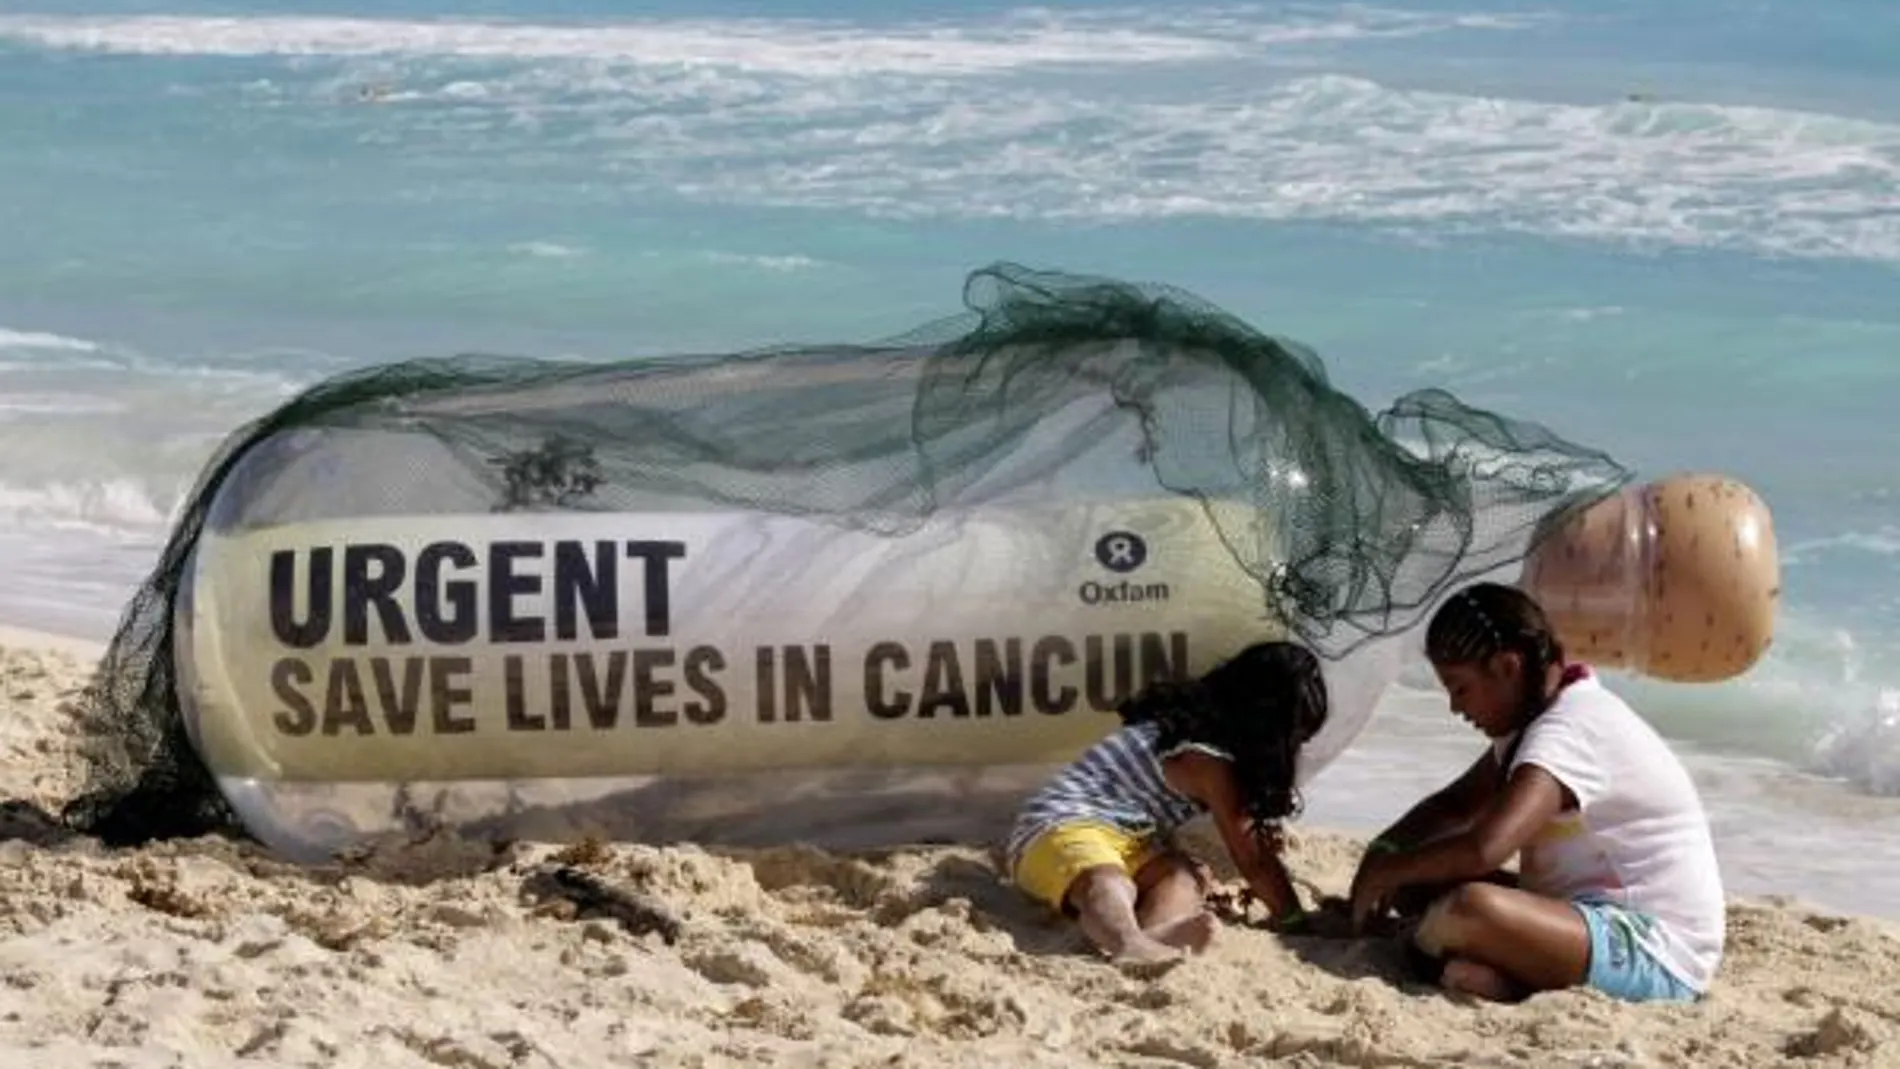 Una botella reivindicativa en la playa de Cancún, donde se celebra la cumbre contra el cambio climático